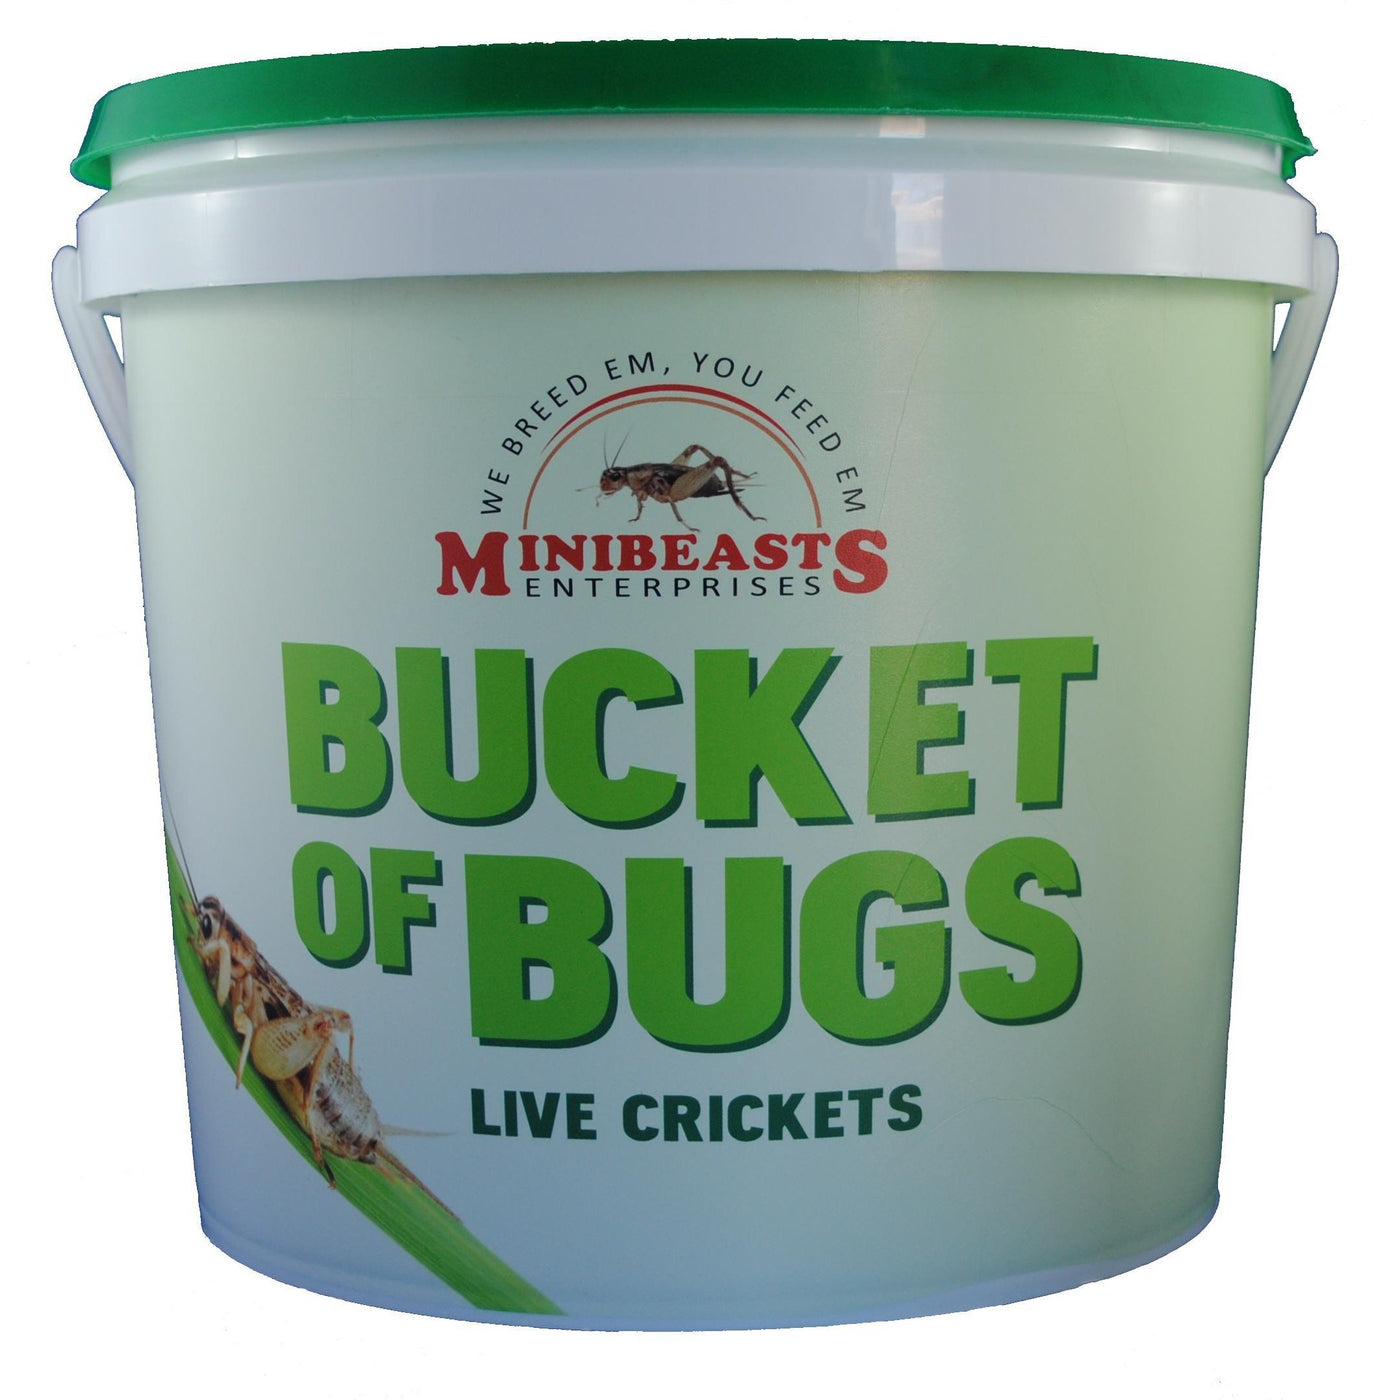 https://www.habitatpets.com.au/cdn/shop/products/Minibeasts-Bucket-of-Bugs-Medium-Live-Crickets_90396ab9-7d55-43e8-b073-c305f5b4f40b_1400x.jpg?v=1628871958